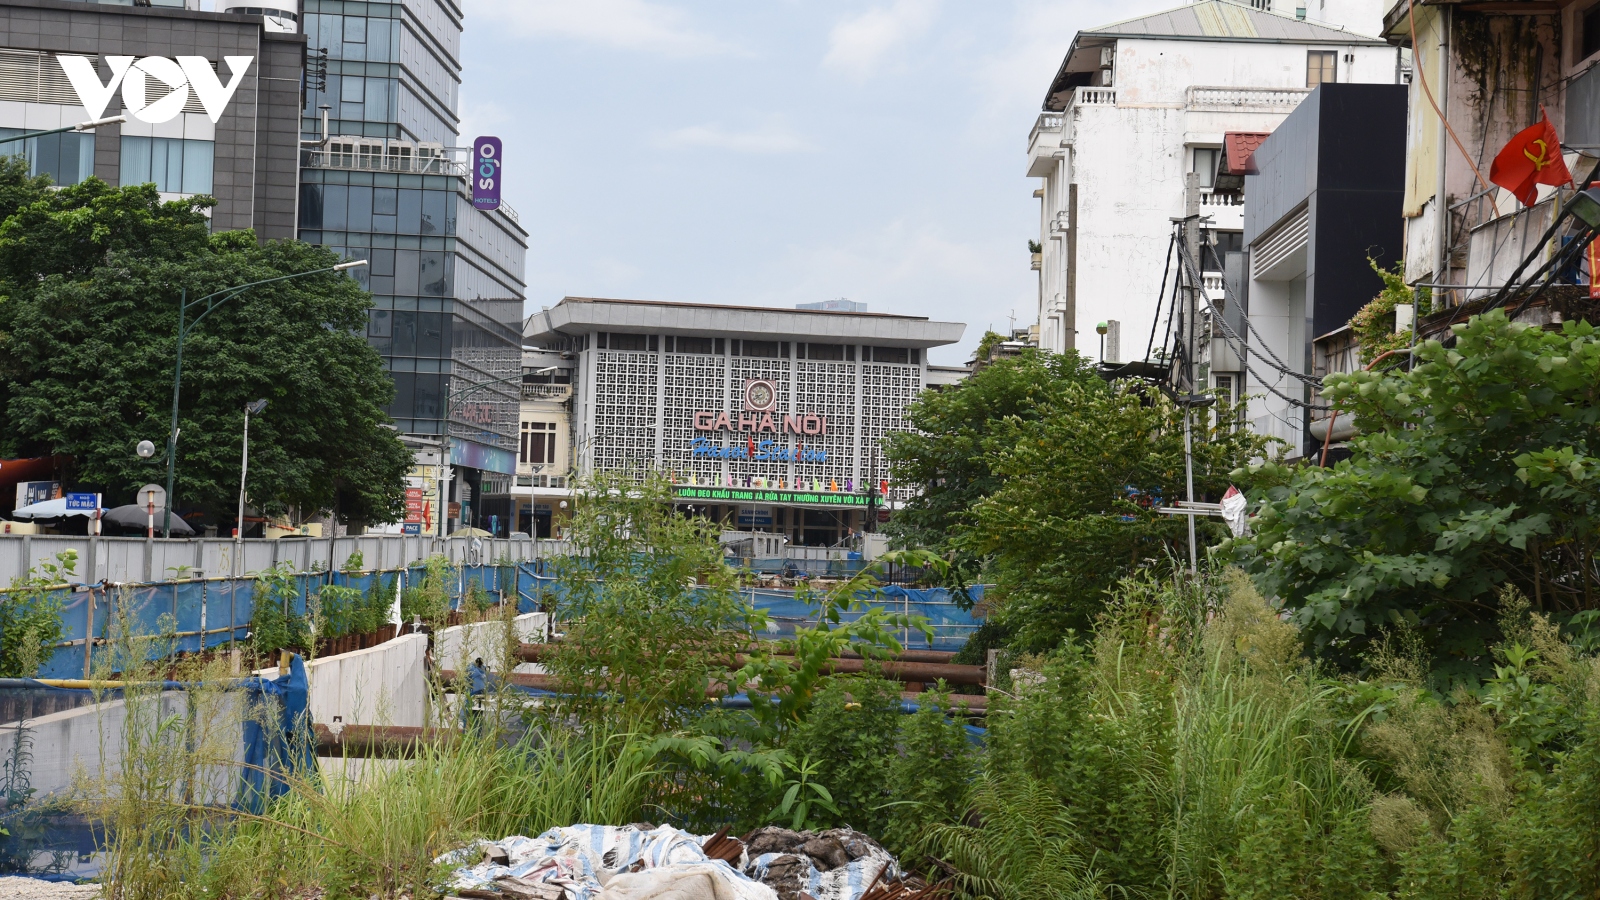 Cận cảnh dự án đường sắt Nhổn - ga Hà Nội chậm tiến độ, bỏ hoang cho cỏ mọc